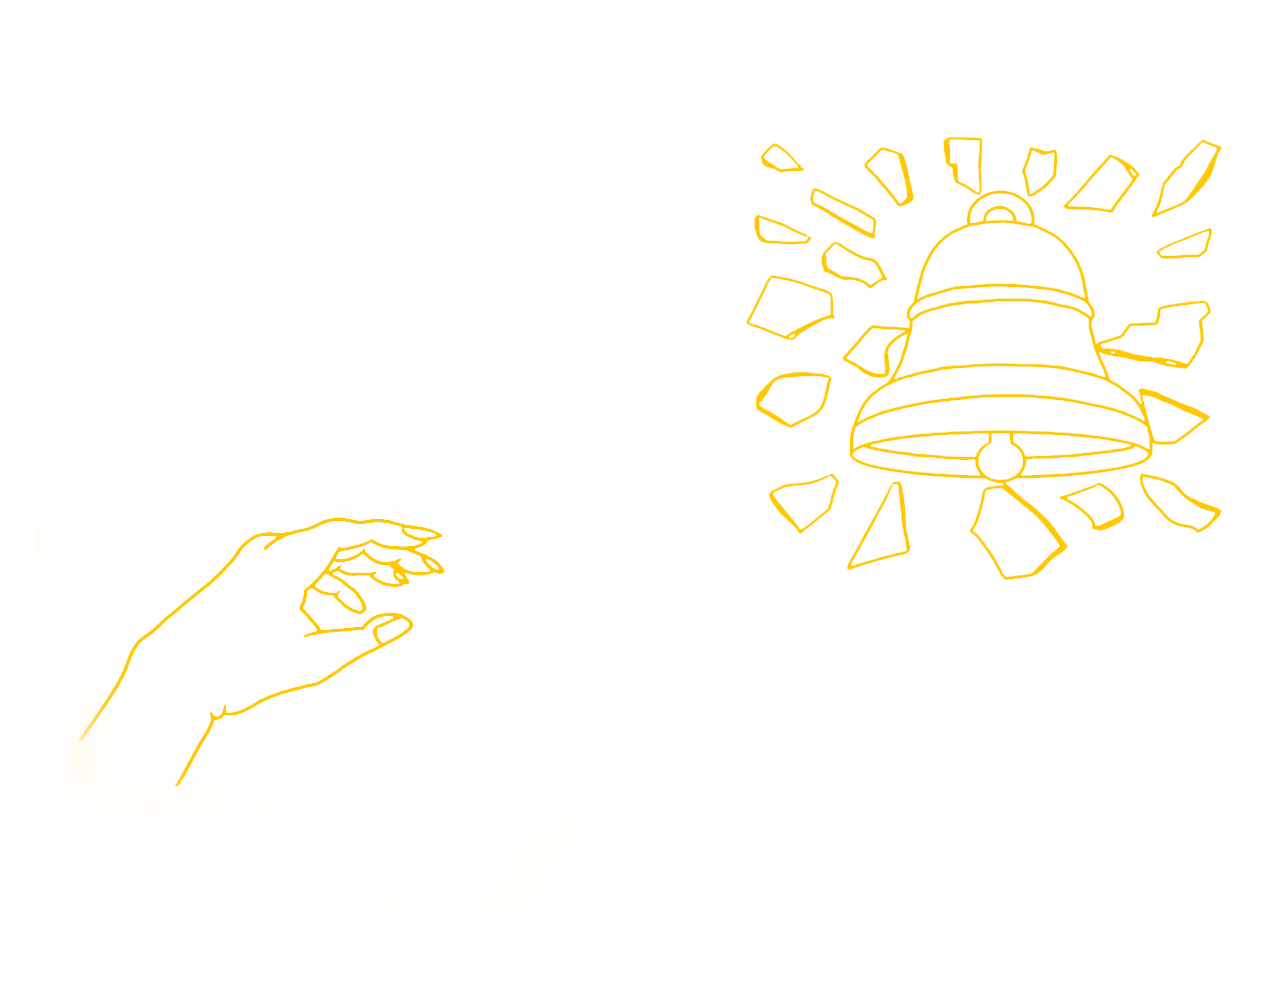 Shoot-your-shot